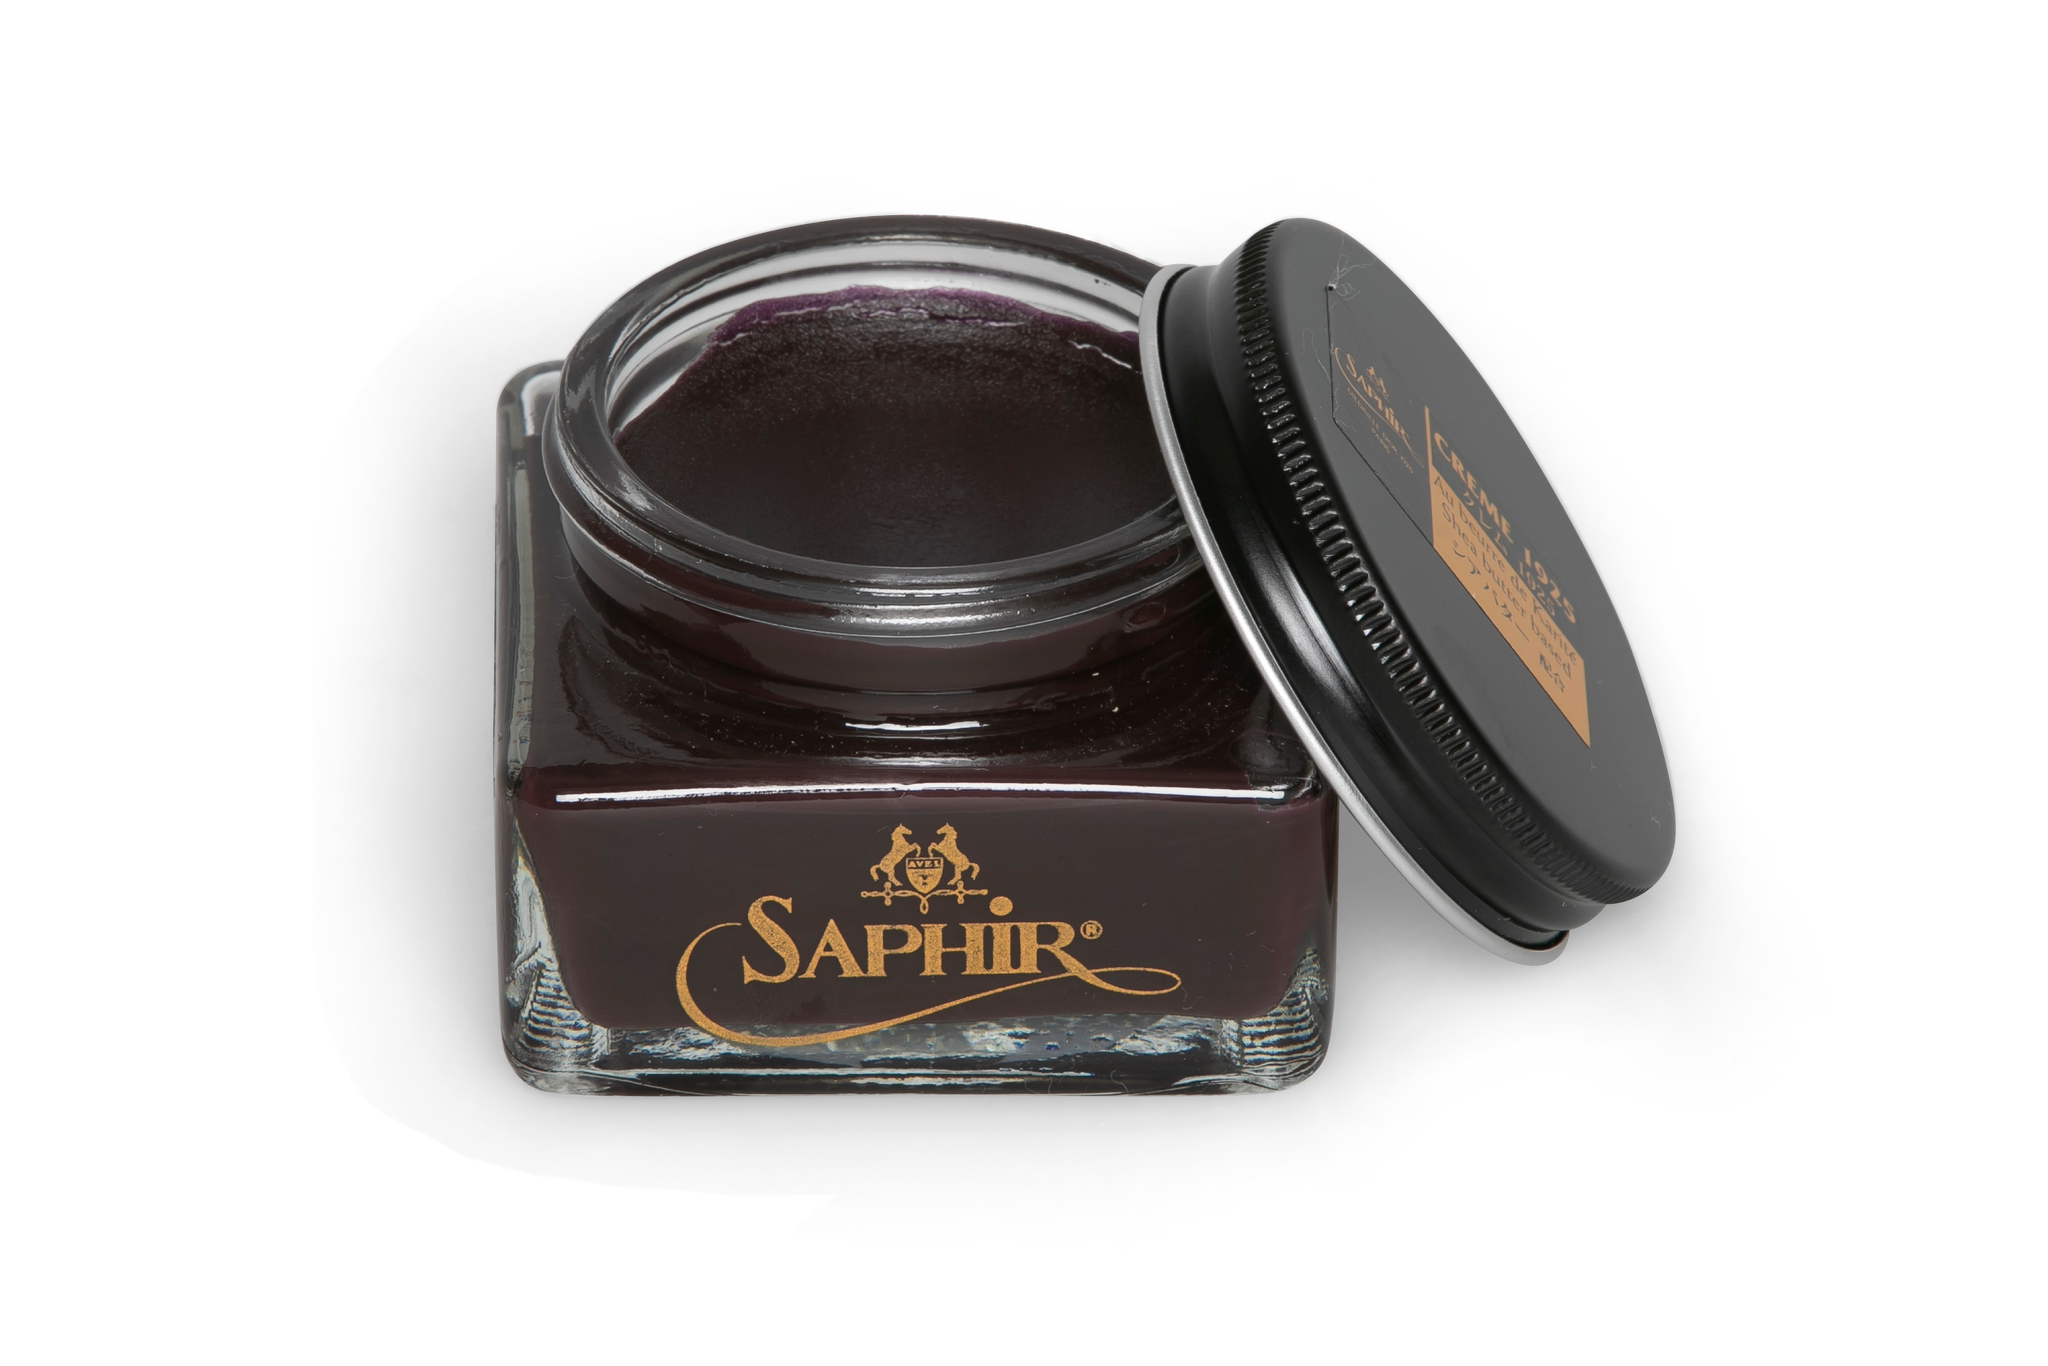 Saphir Pommadier cream in Burgundy colour for premium shoe care